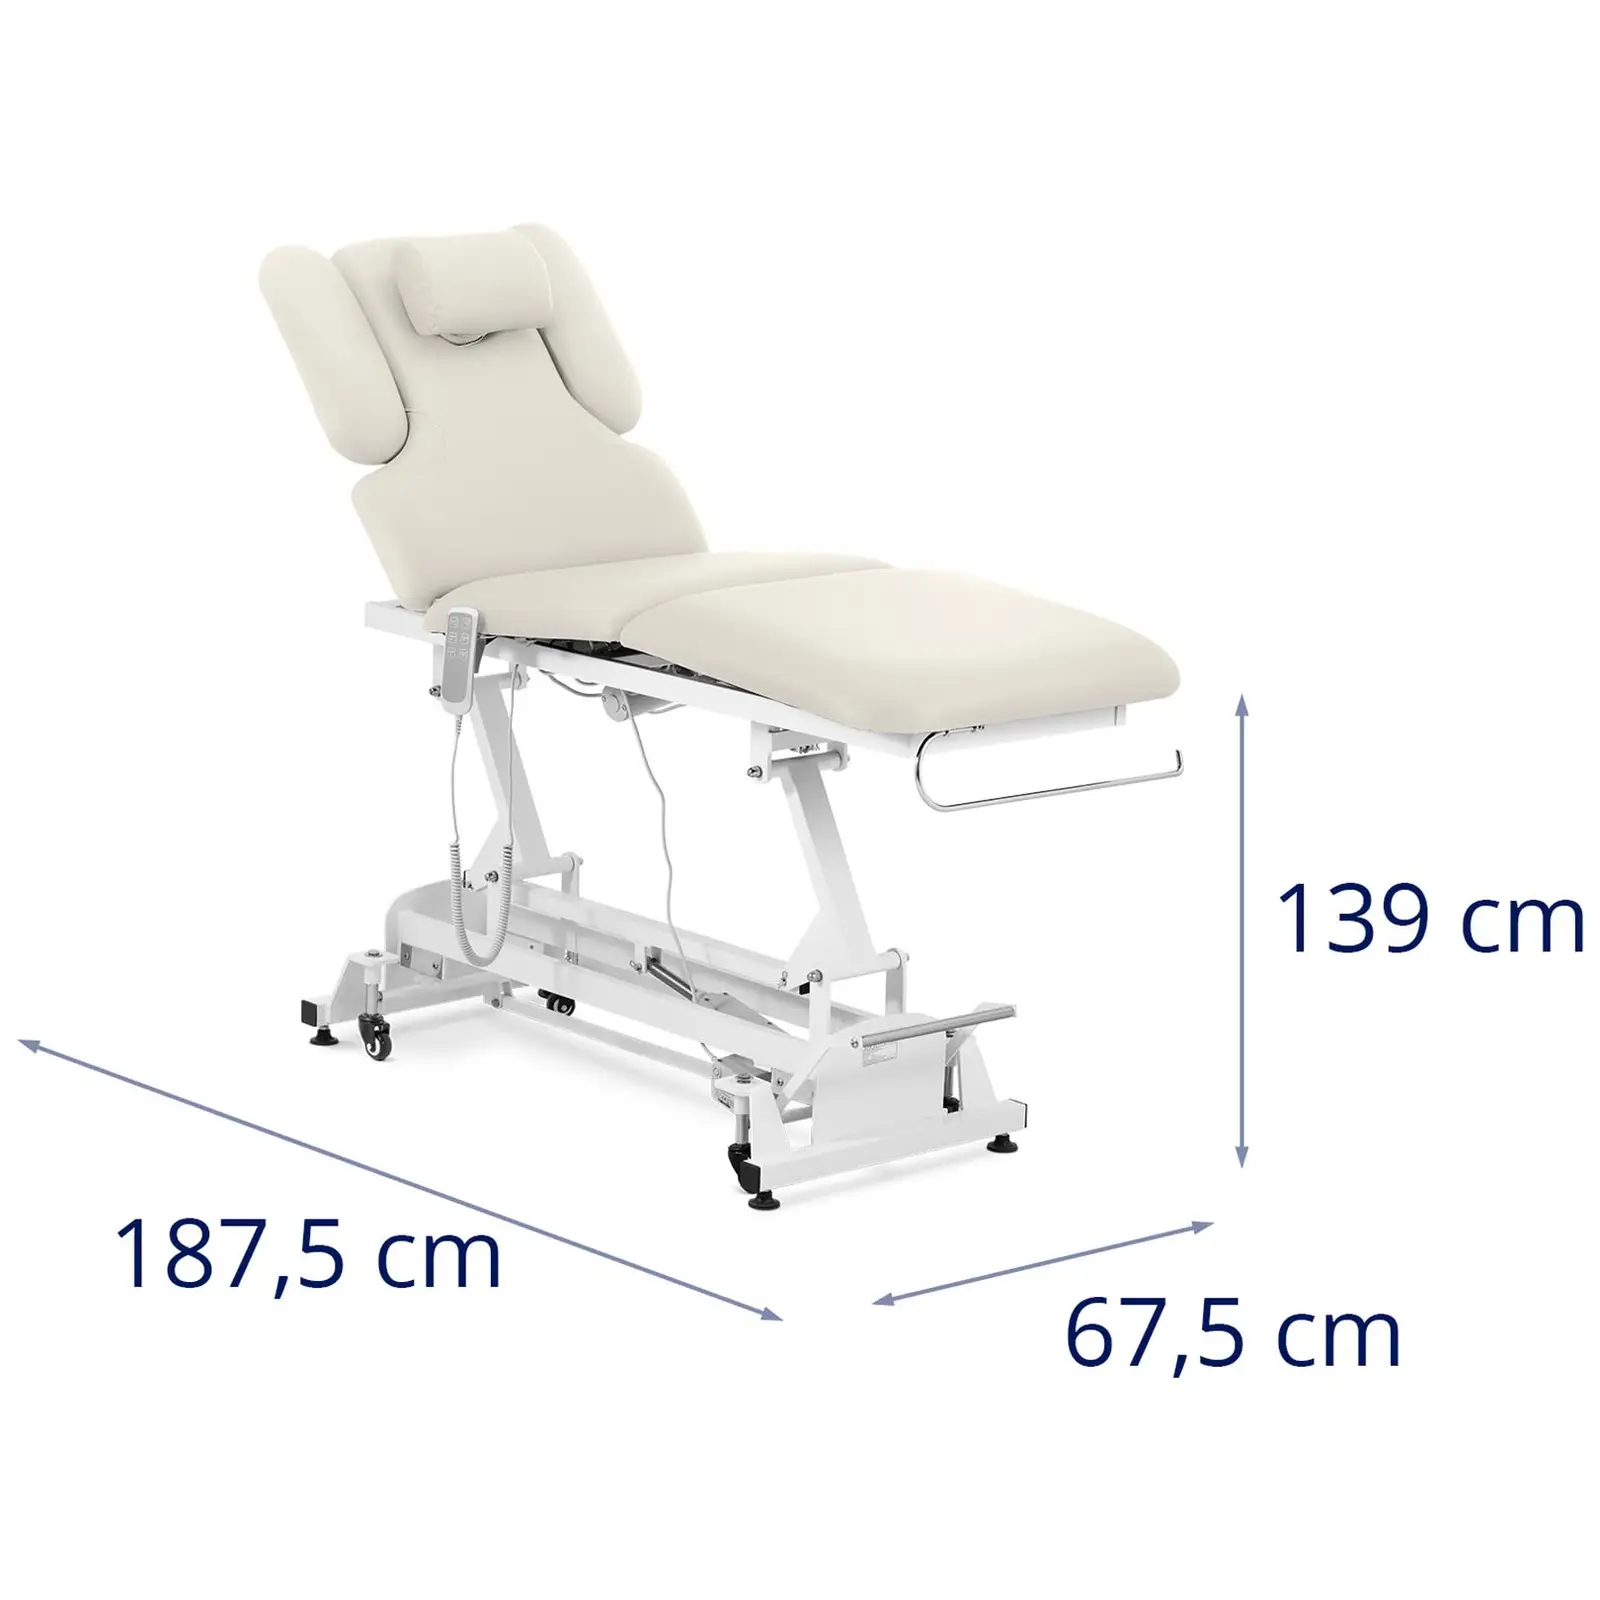 Table de massage électrique & tabouret à roulettes avec dossier - Beige